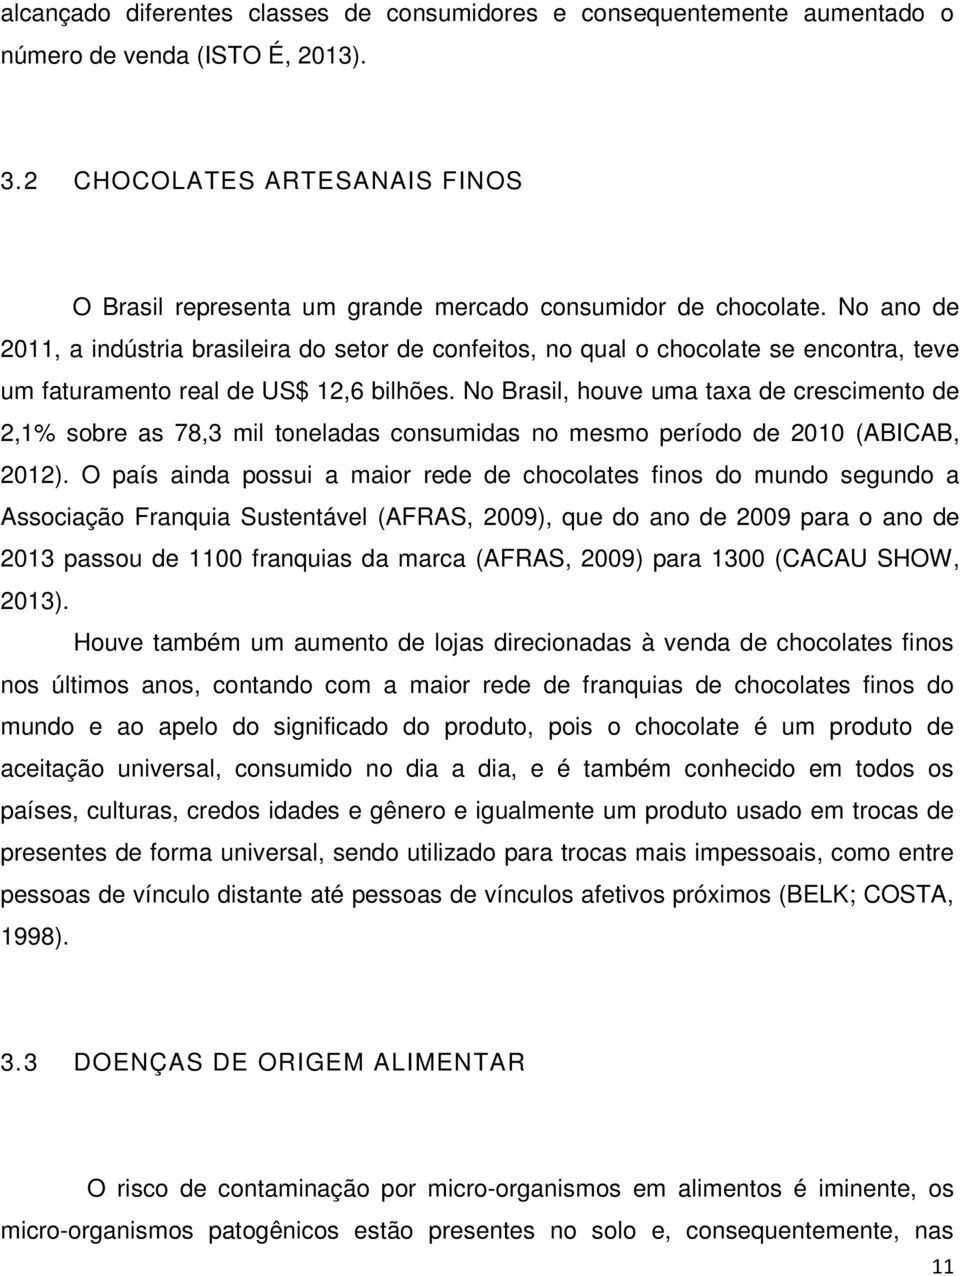 No ano de 2011, a indústria brasileira do setor de confeitos, no qual o chocolate se encontra, teve um faturamento real de US$ 12,6 bilhões.